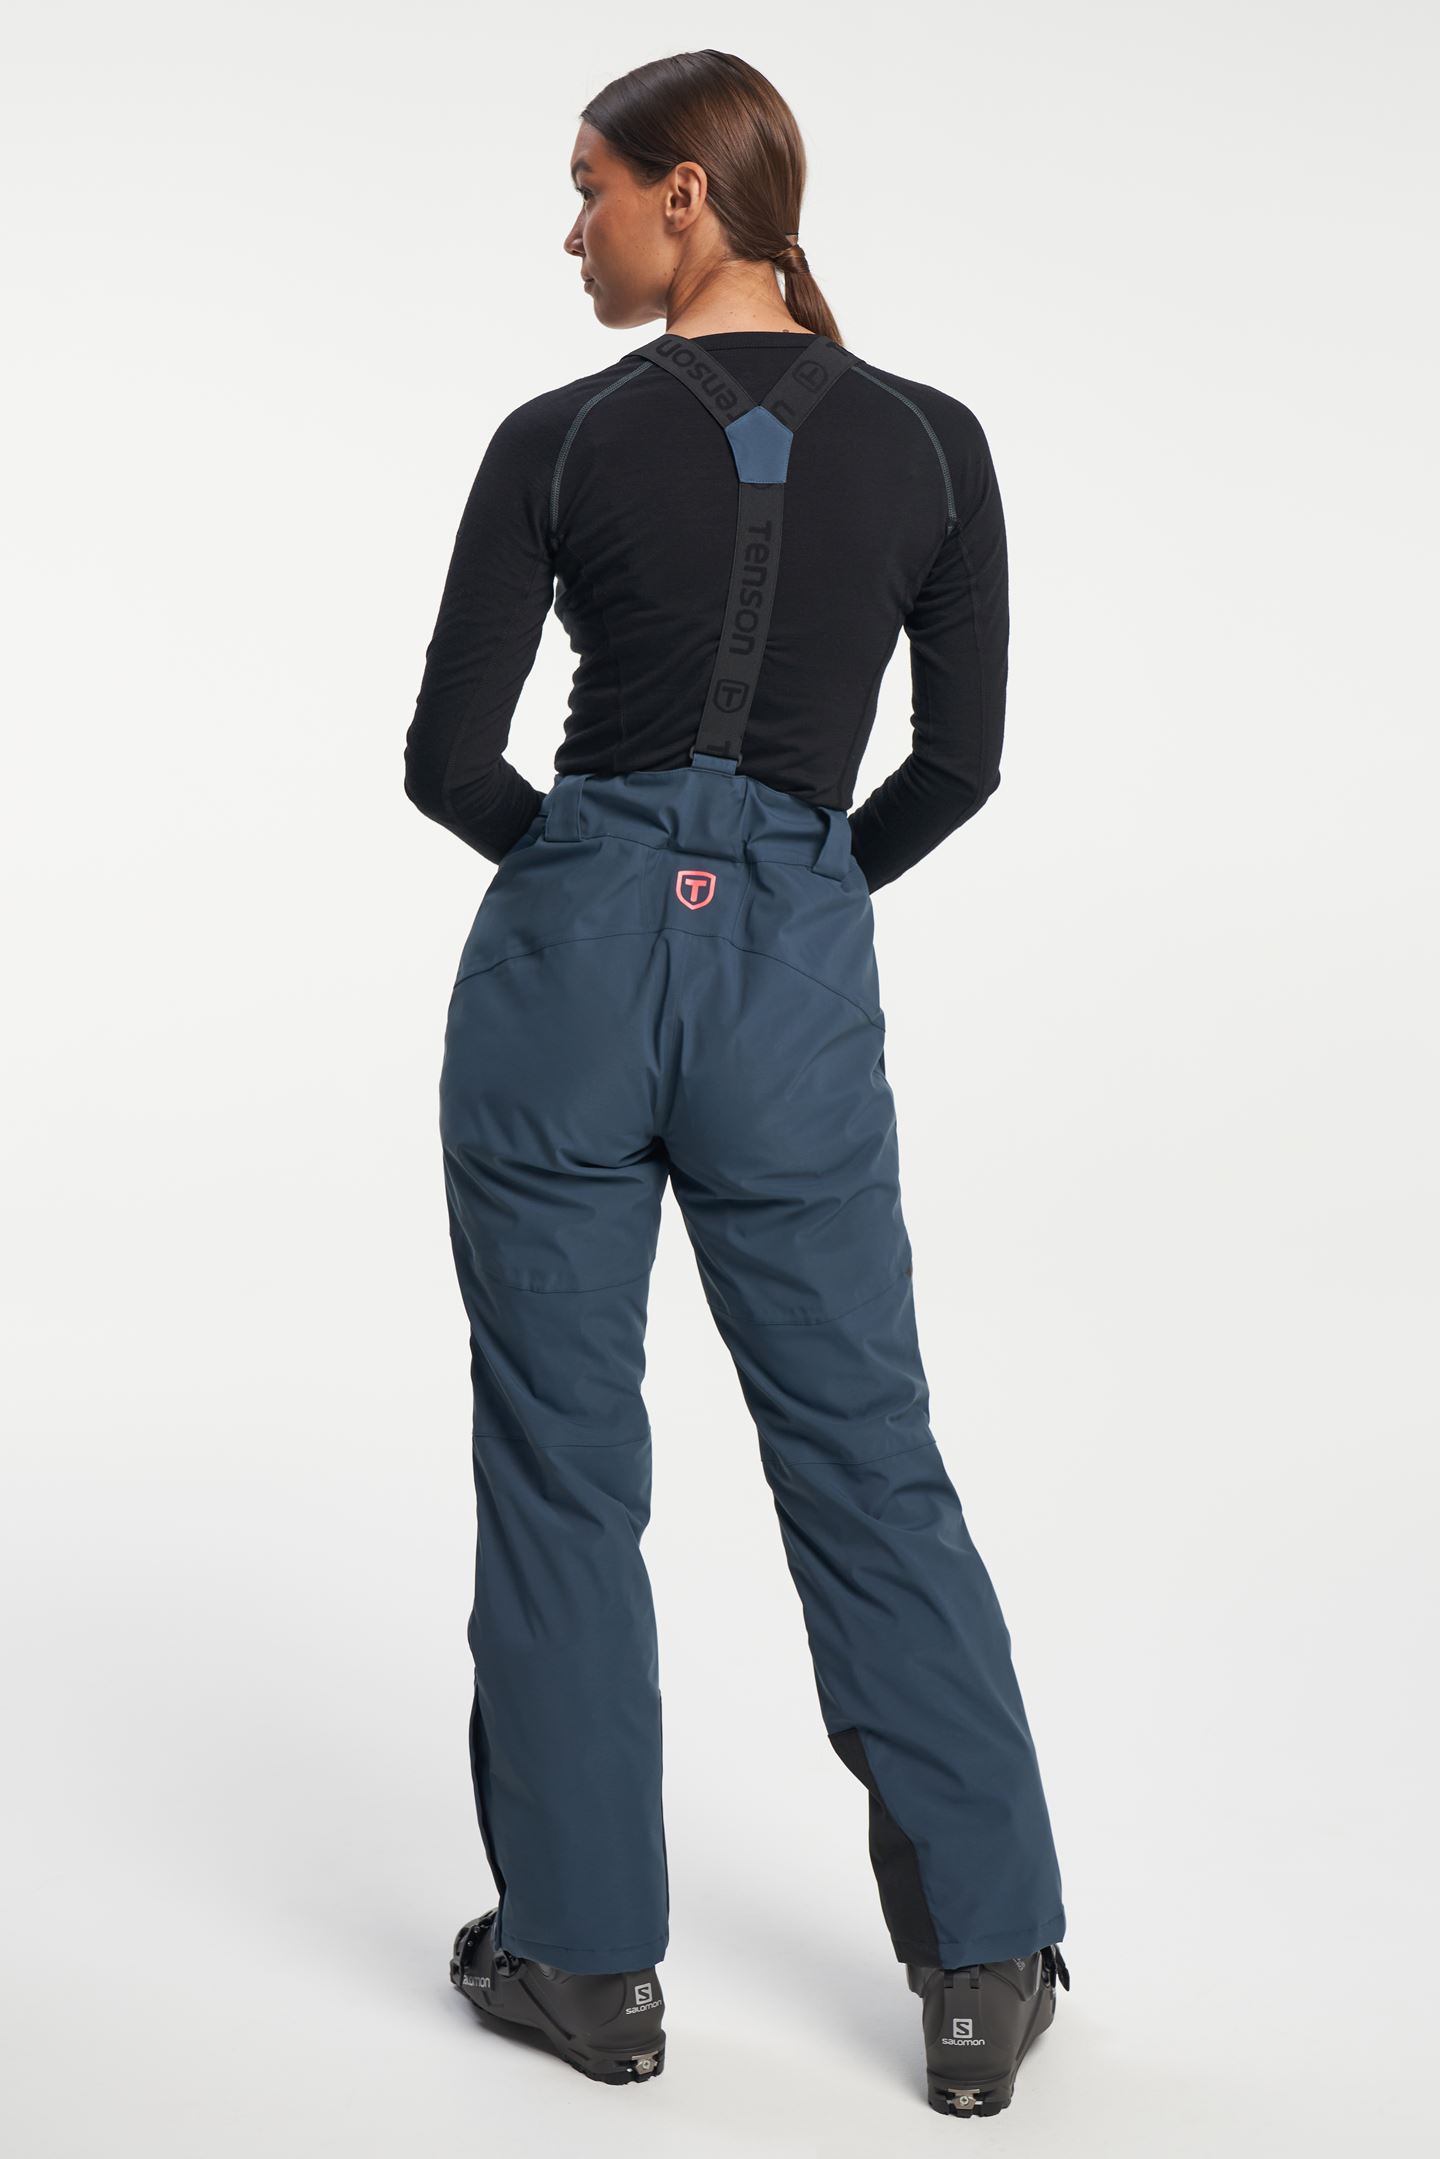 Core Ski Pants - Women's Ski Pants with Removable Braces - Grey Green